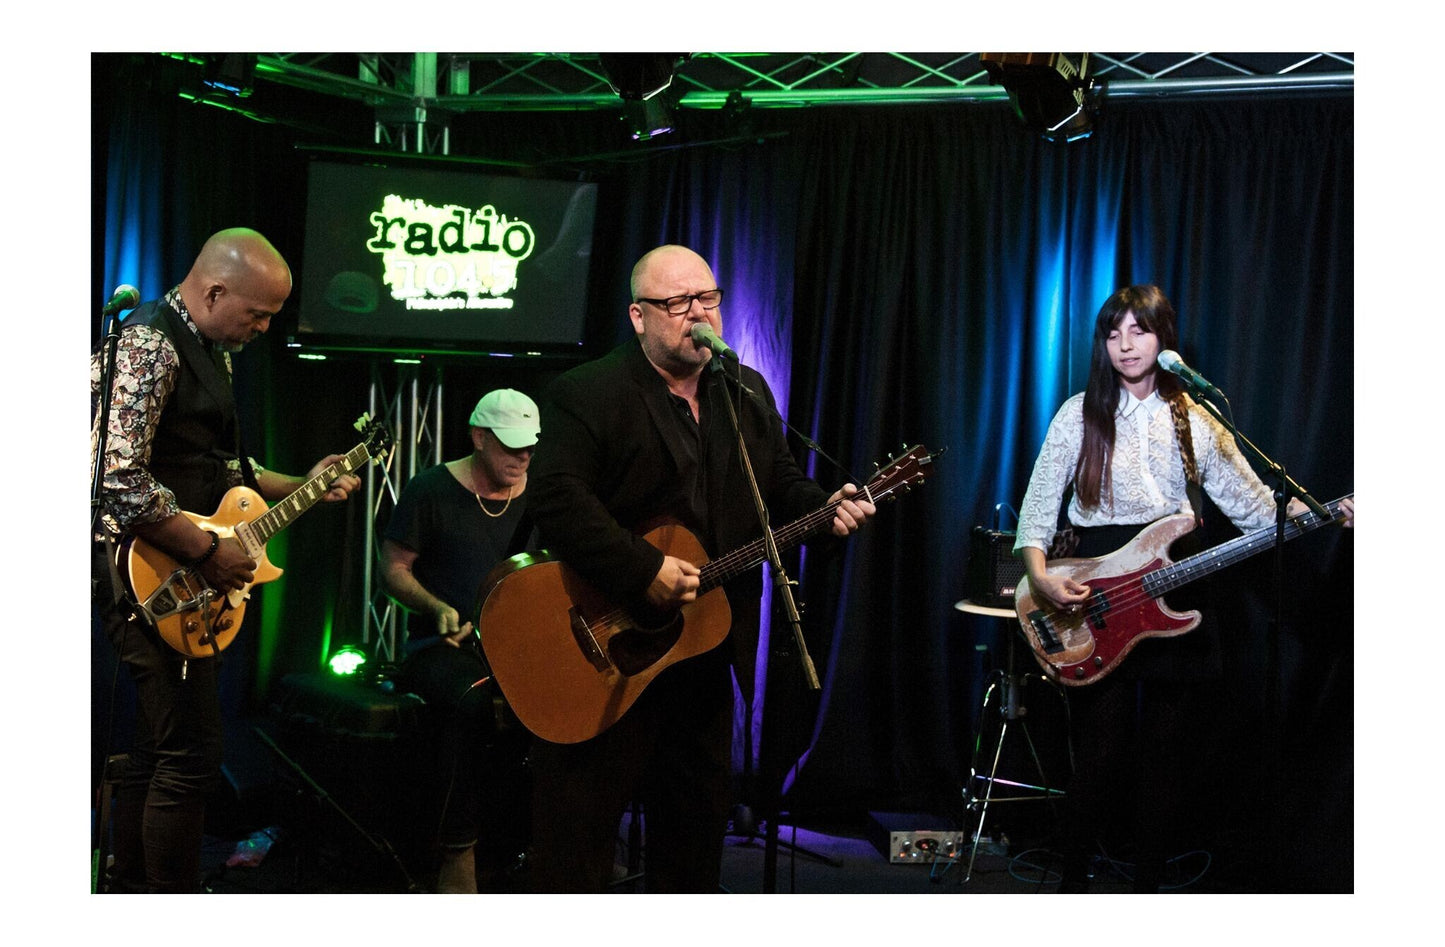 Pixies - Playing a Live Radio Gig, USA, 2017 Print